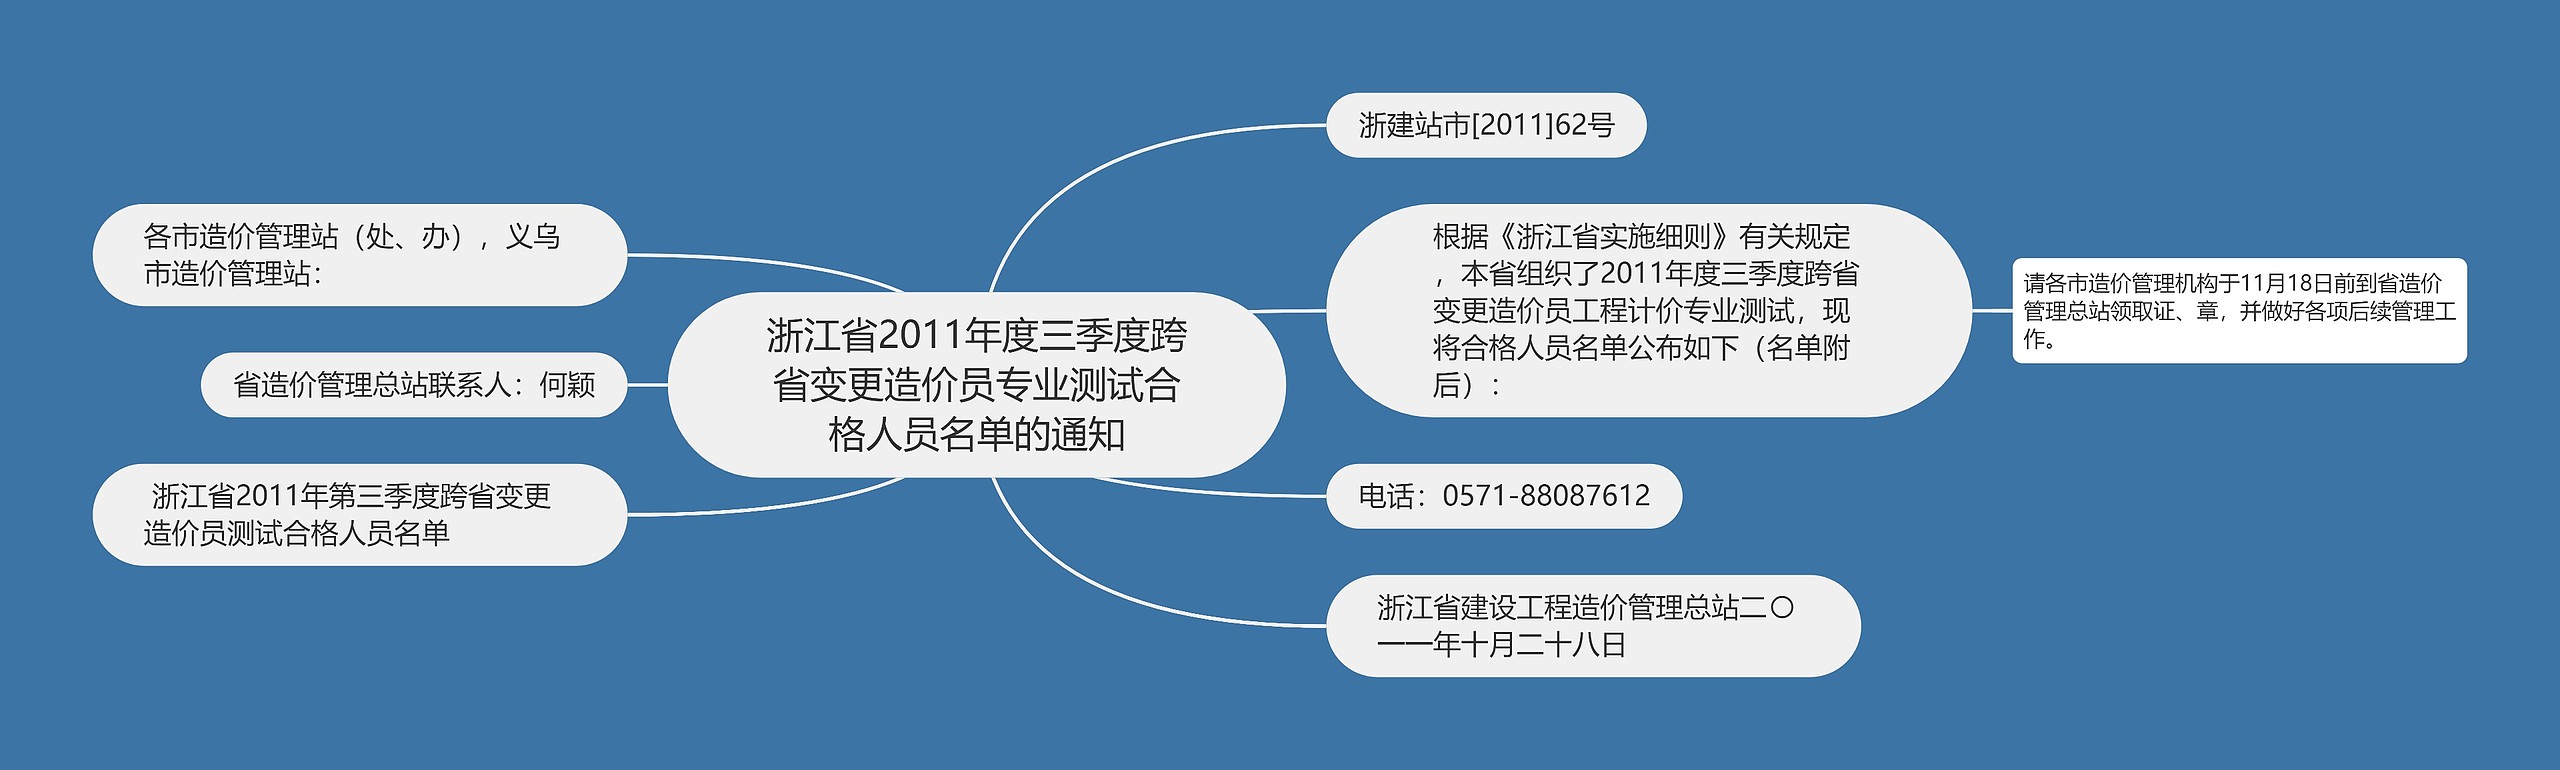 浙江省2011年度三季度跨省变更造价员专业测试合格人员名单的通知